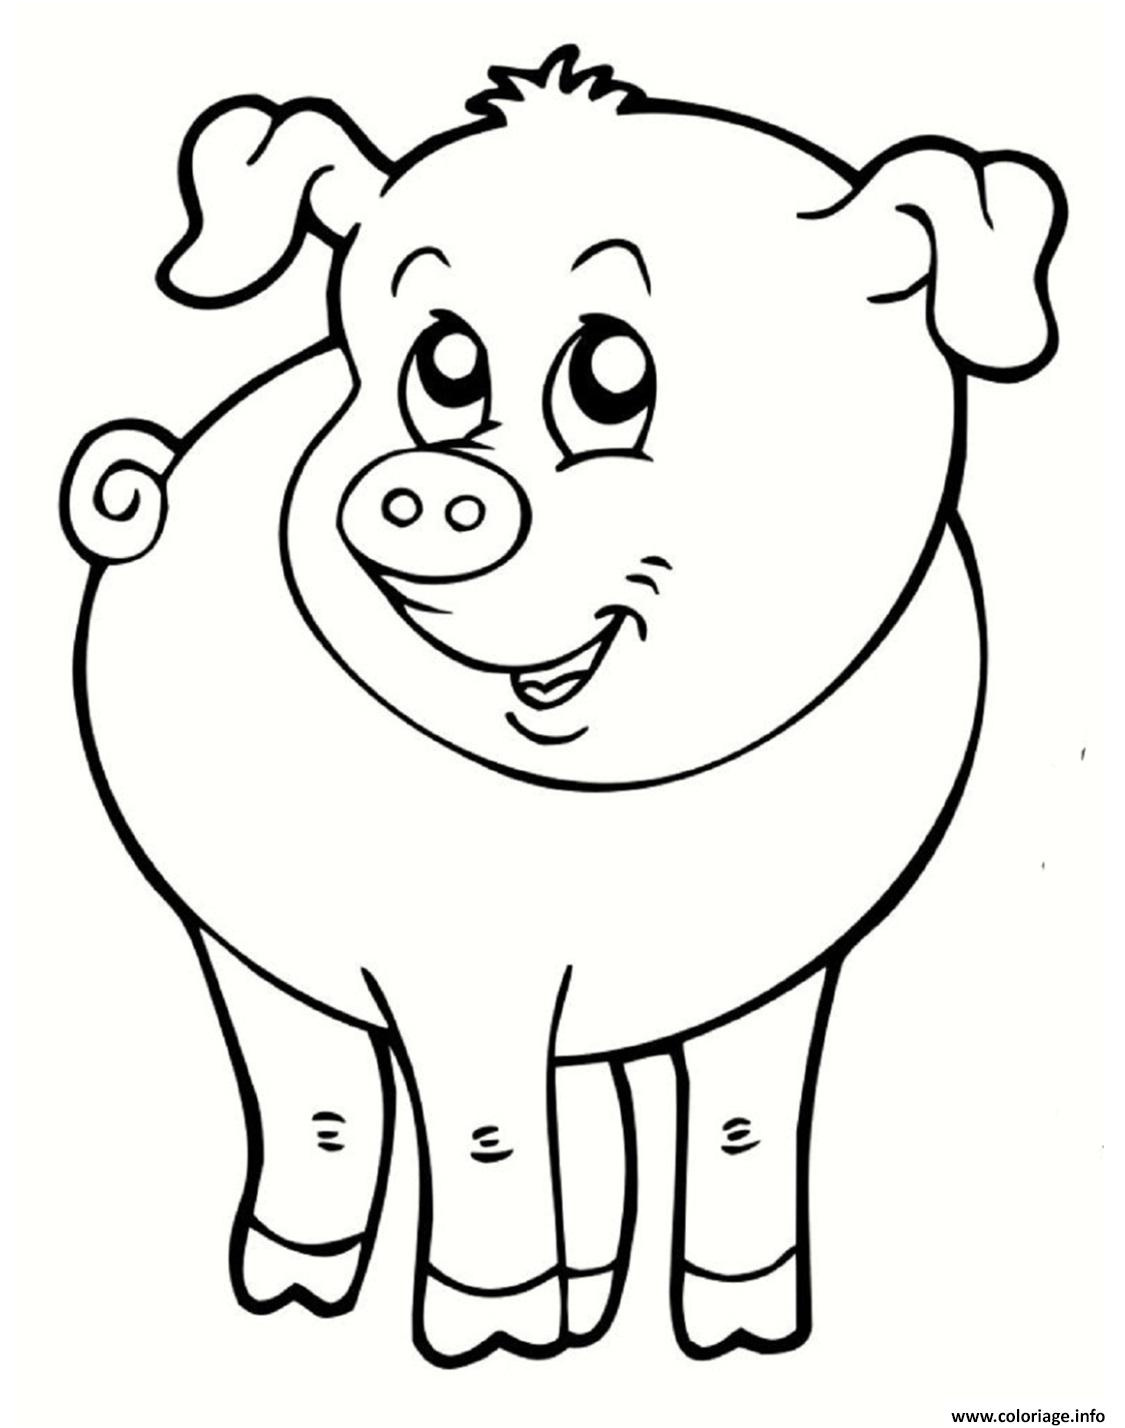 Coloriage Animaux De La Ferme Génial Coloriage Cochon souriant Animal De La Ferme Dessin